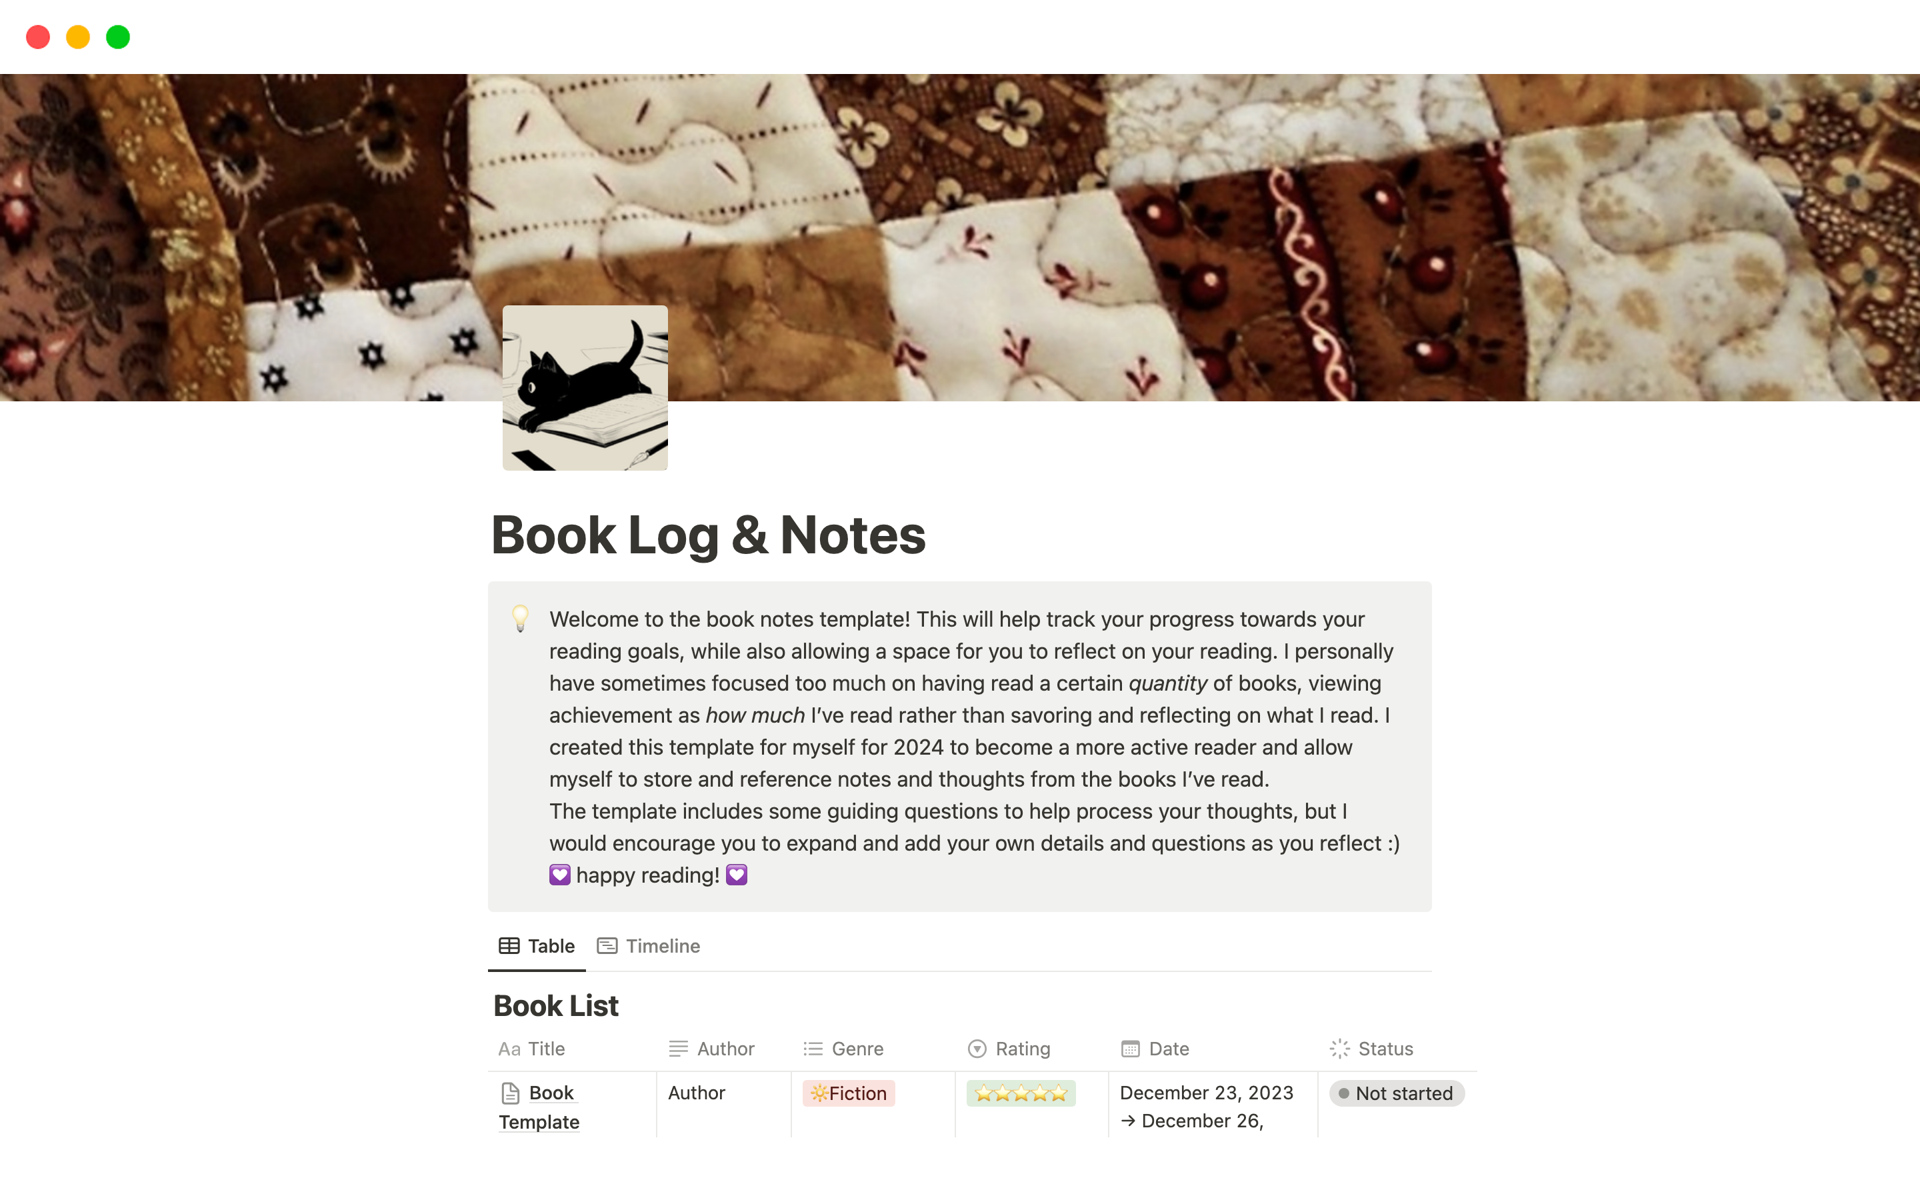 Aperçu du modèle de Book Log & Notes